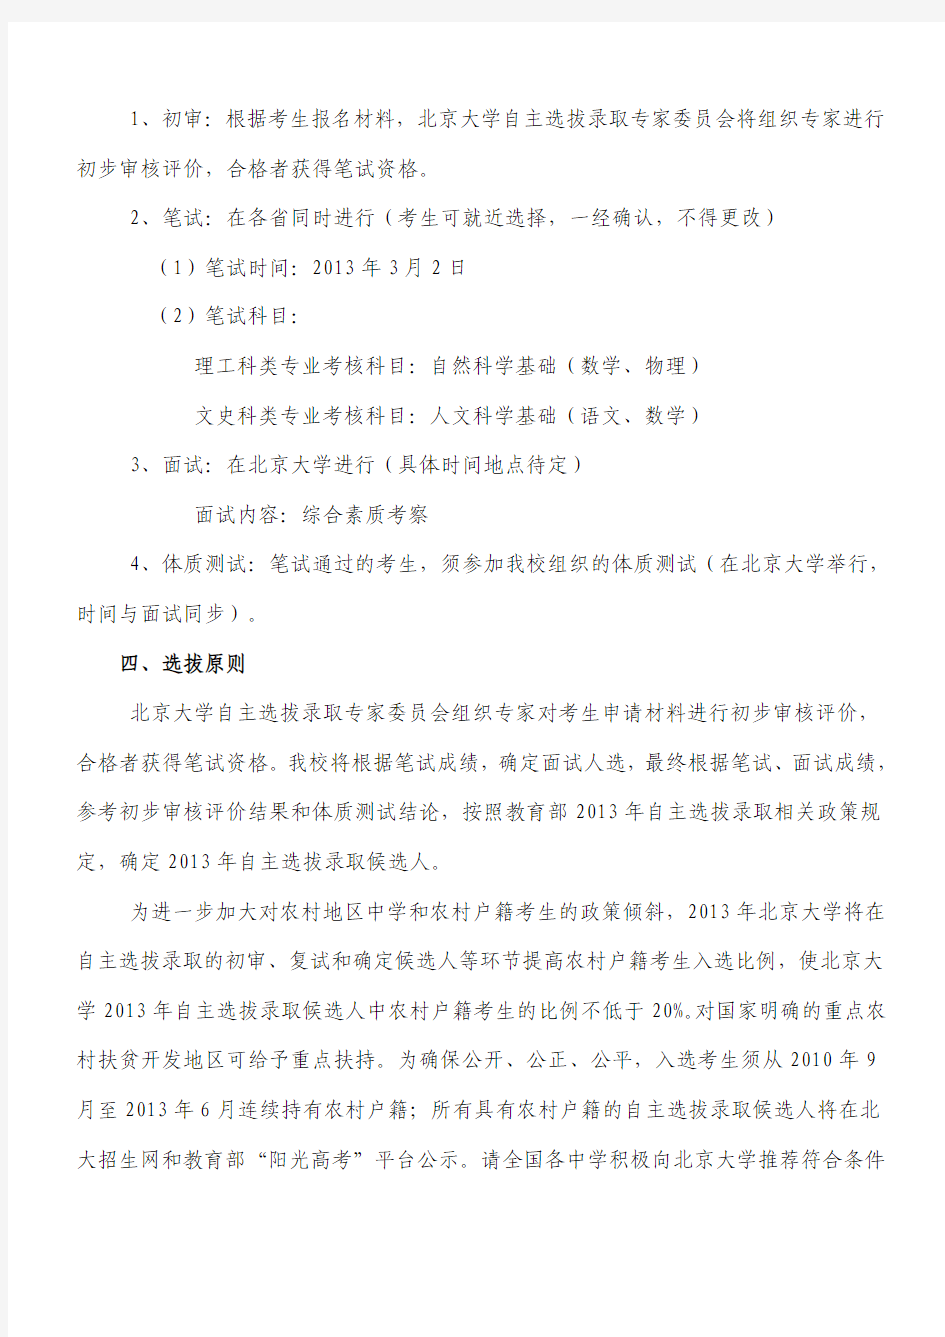 北京大学2013年自主选拔录取招生简章